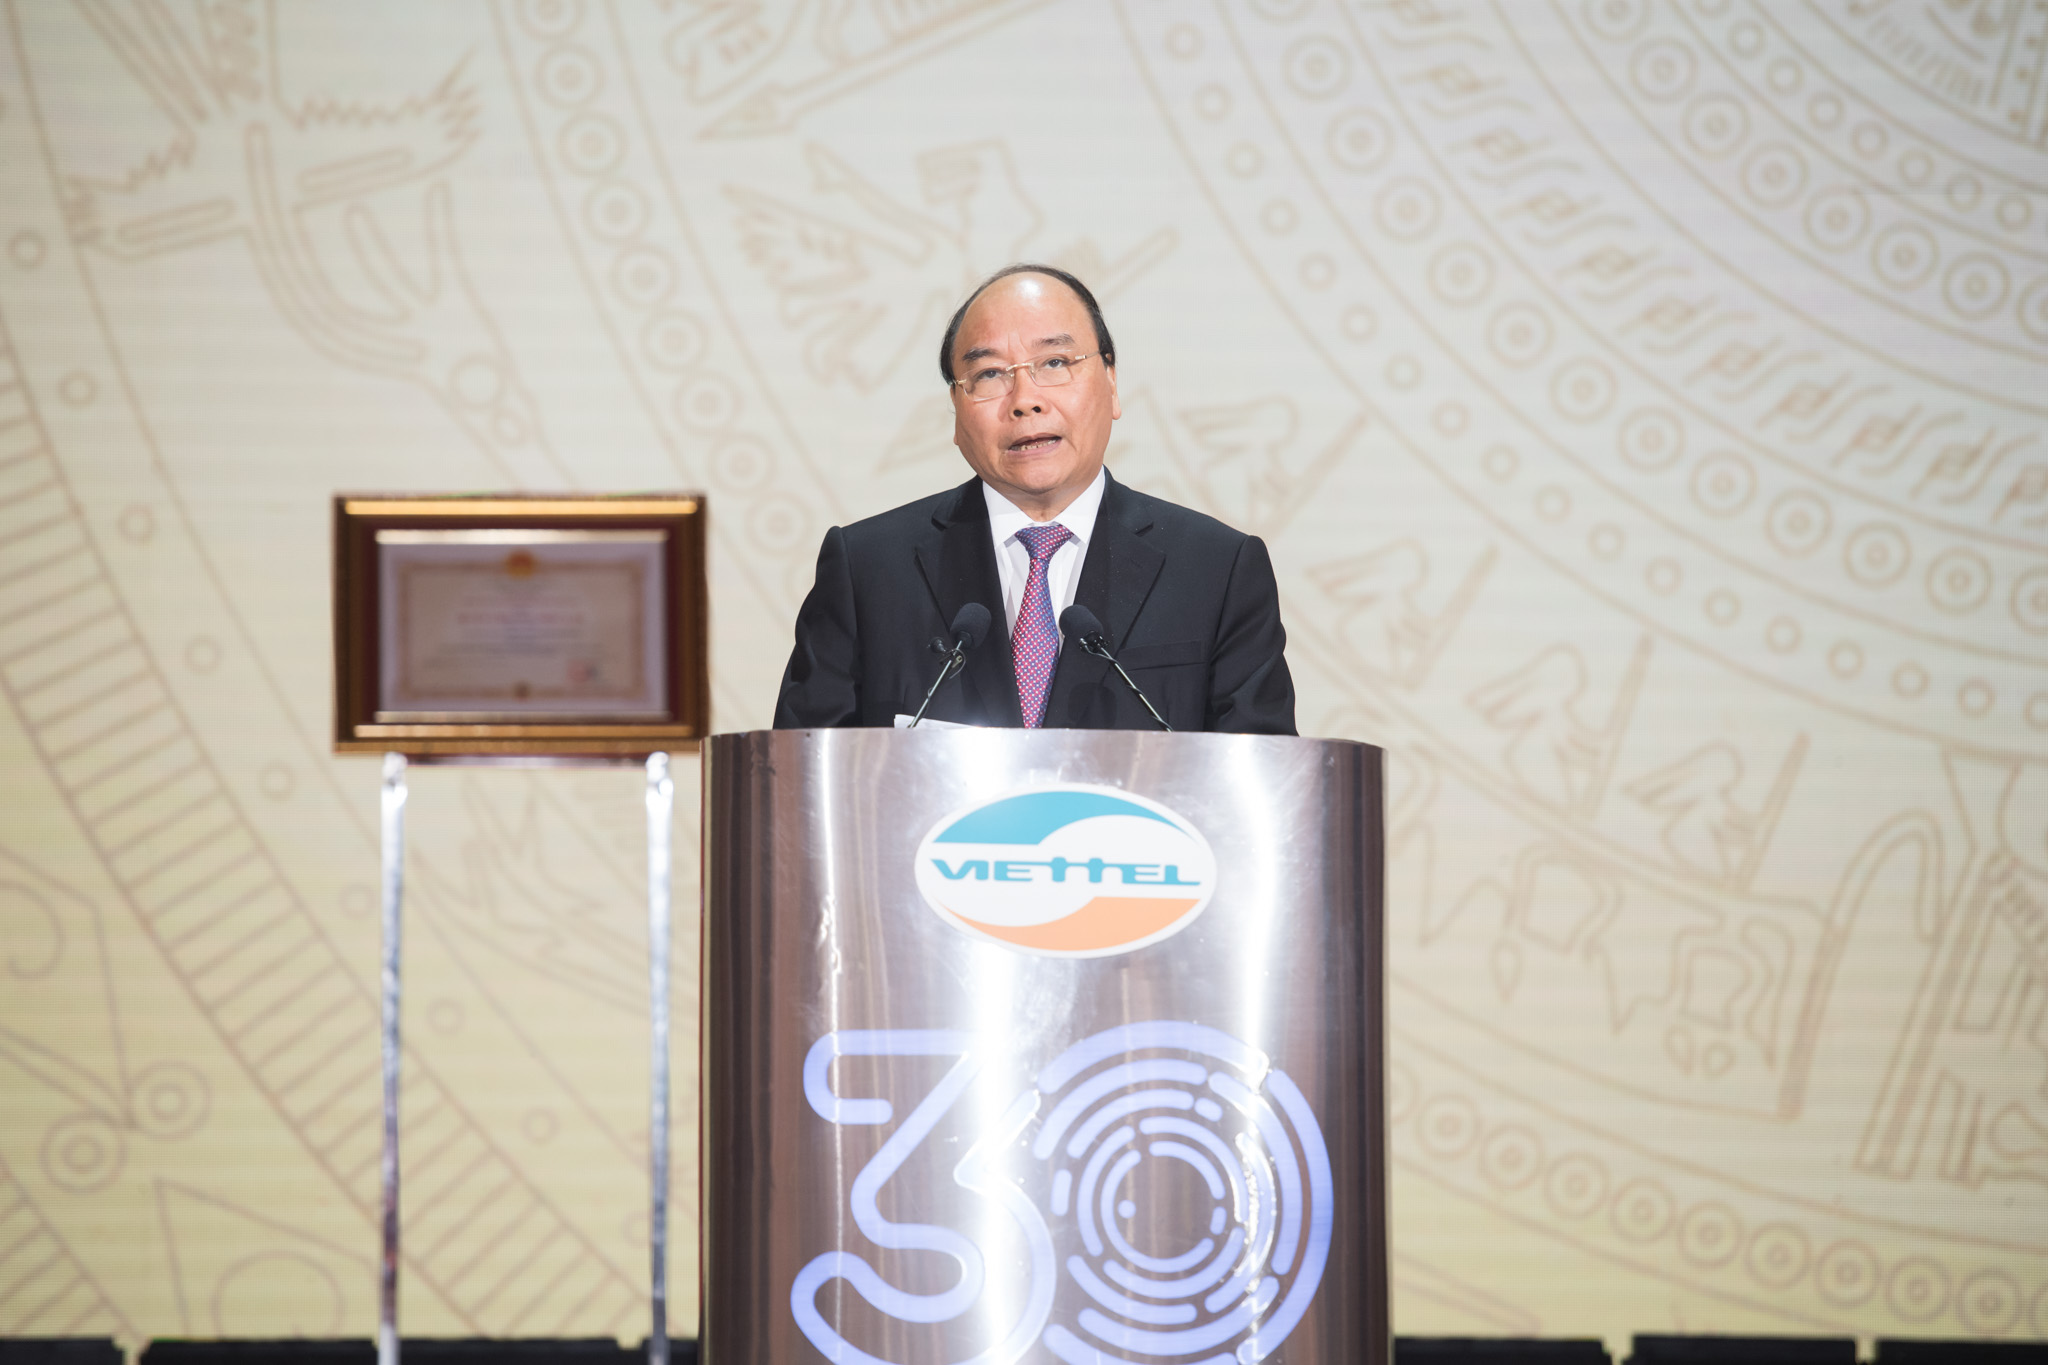 Thủ tướng Chính phủ Nguyễn Xuân Phúc phát biểu tại lễ kỷ niệm 30 năm thành lập Viettel.